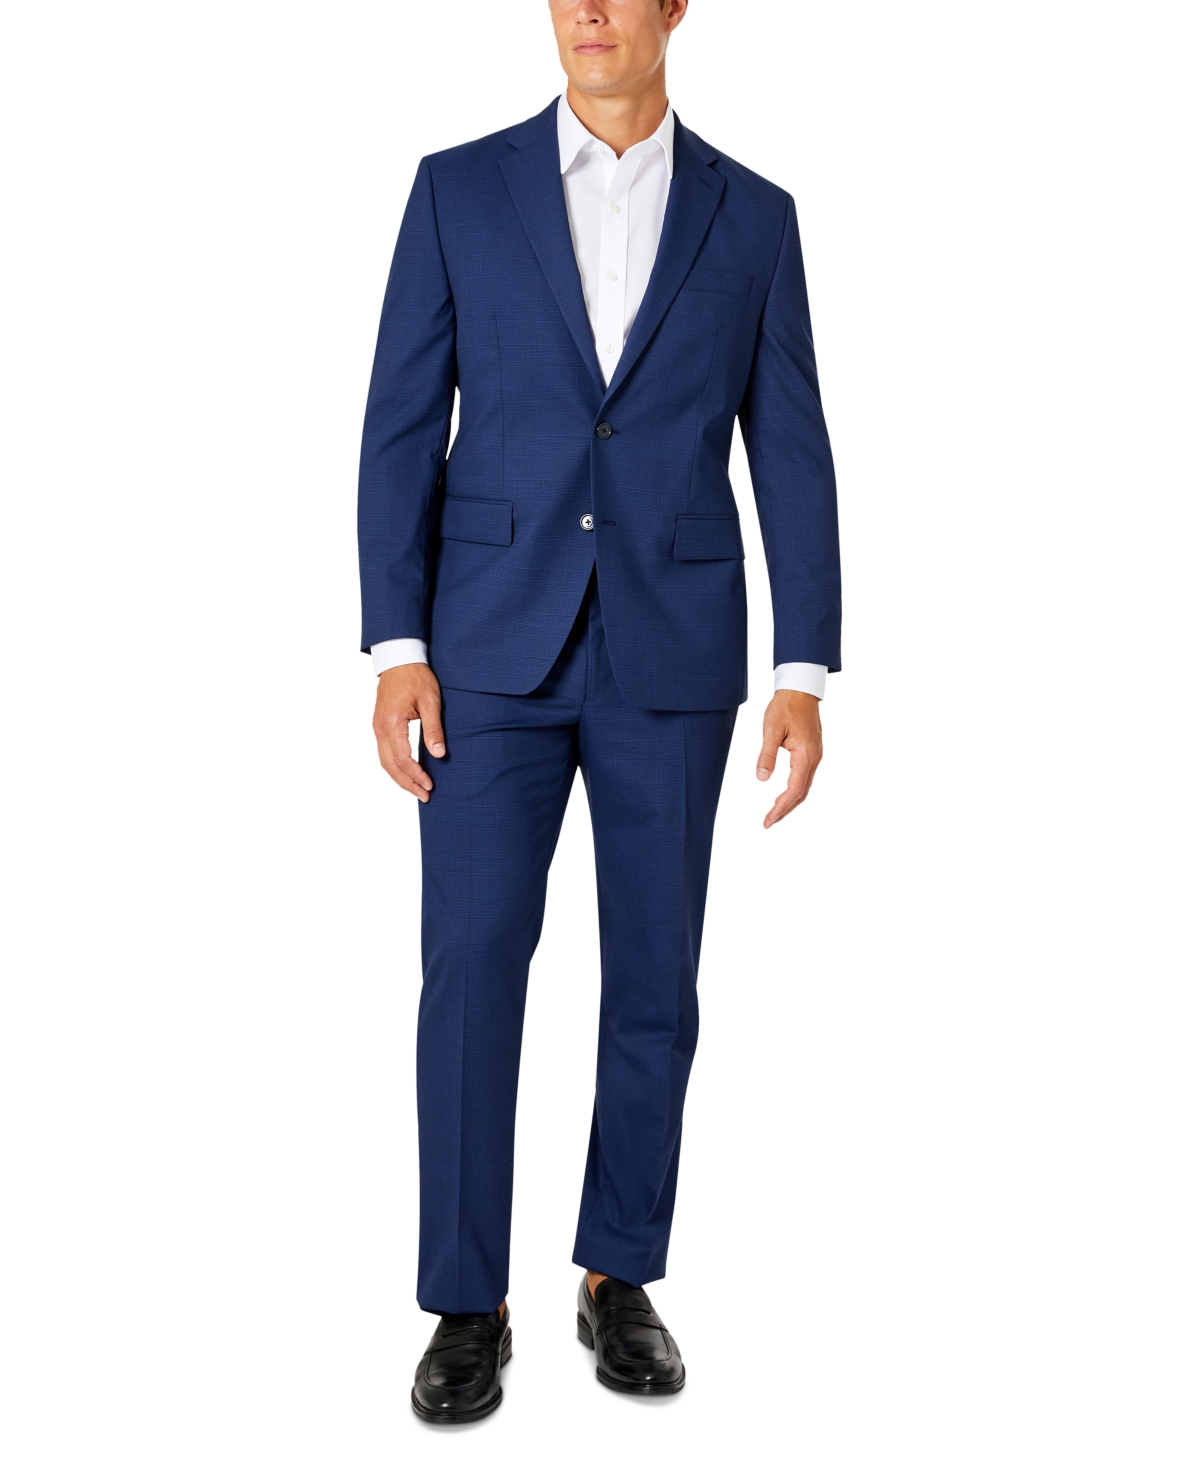 Men's Classic-Fit Suit - Navy Solid